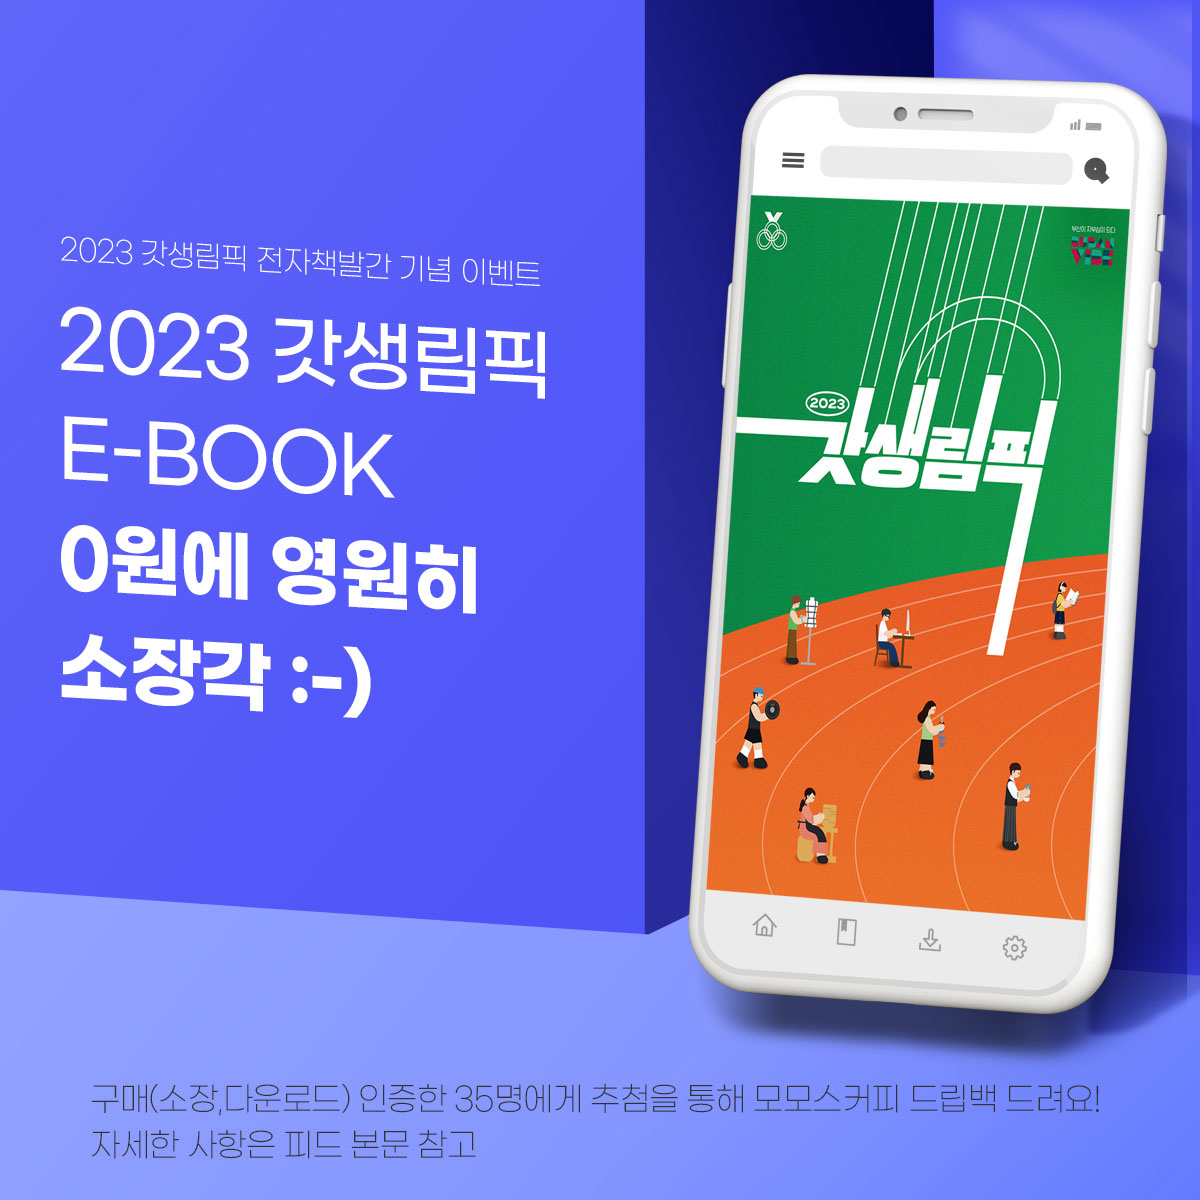 2023 갓생림픽 E-BOOK 0원에 영원히 소장작 :-)